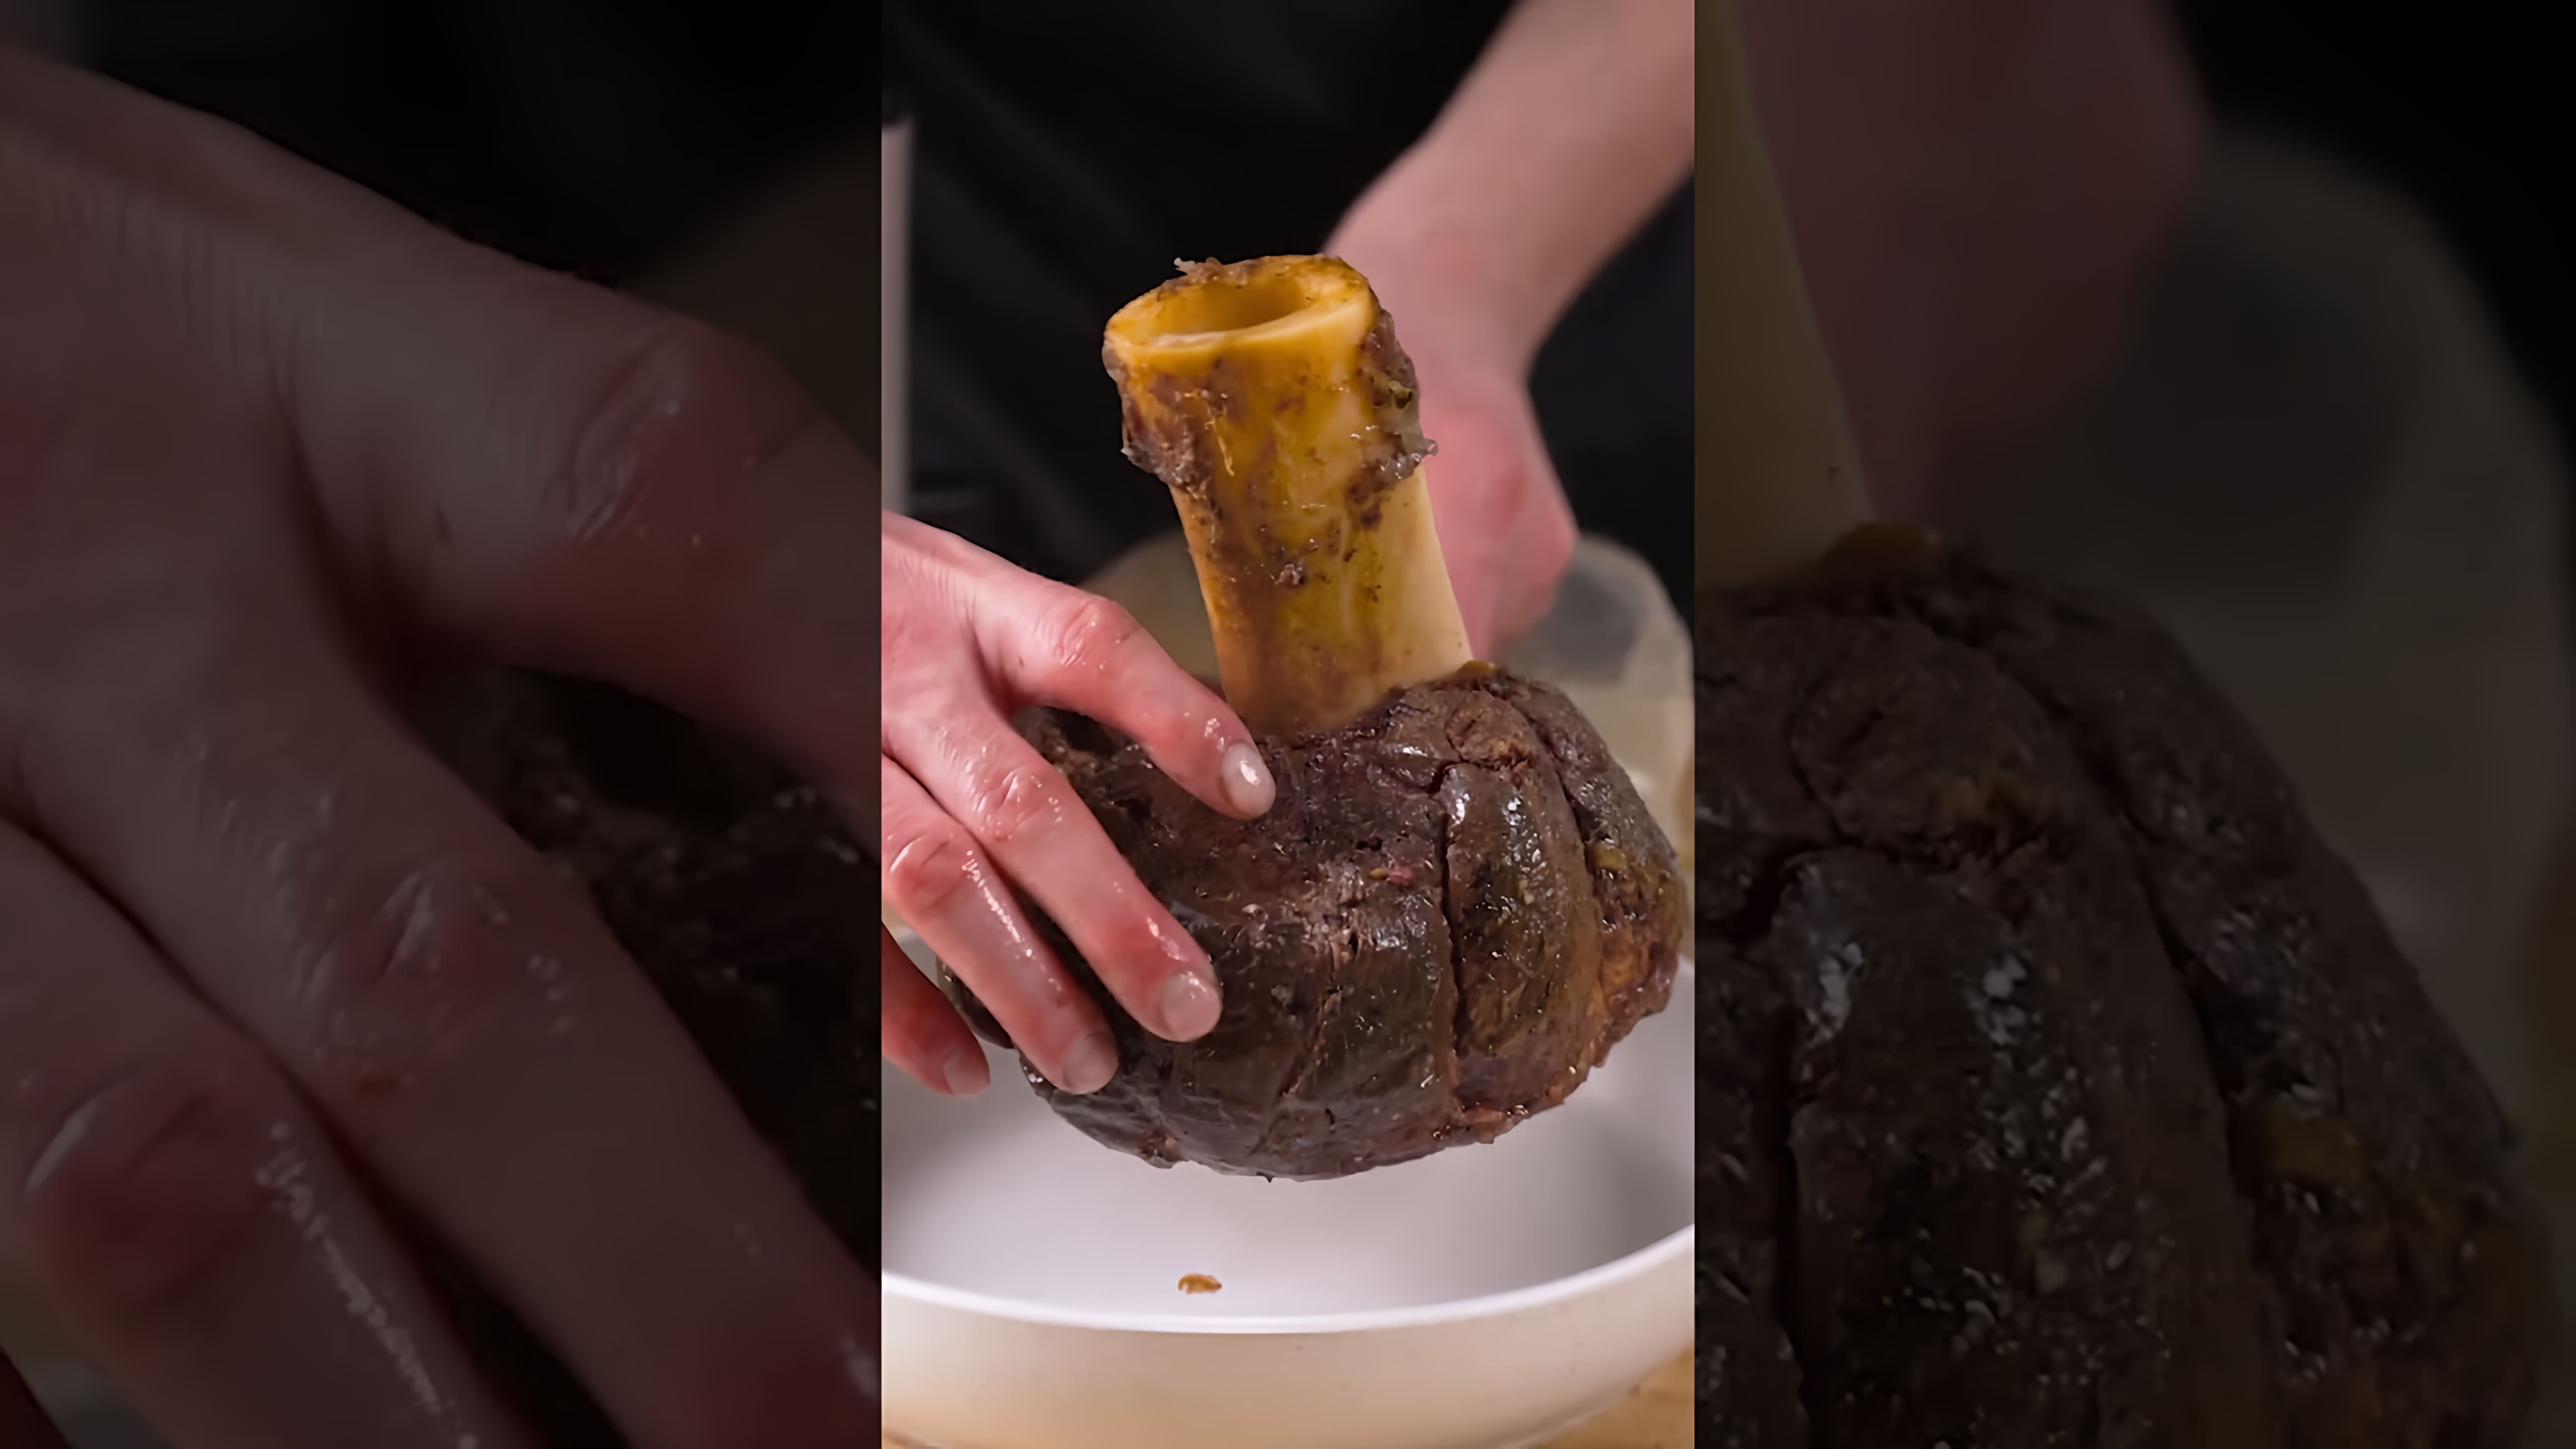 Рецепт сочной говядины в сувиде - это видео-ролик, который демонстрирует процесс приготовления вкусного и сочного мяса говядины в вакуумной упаковке